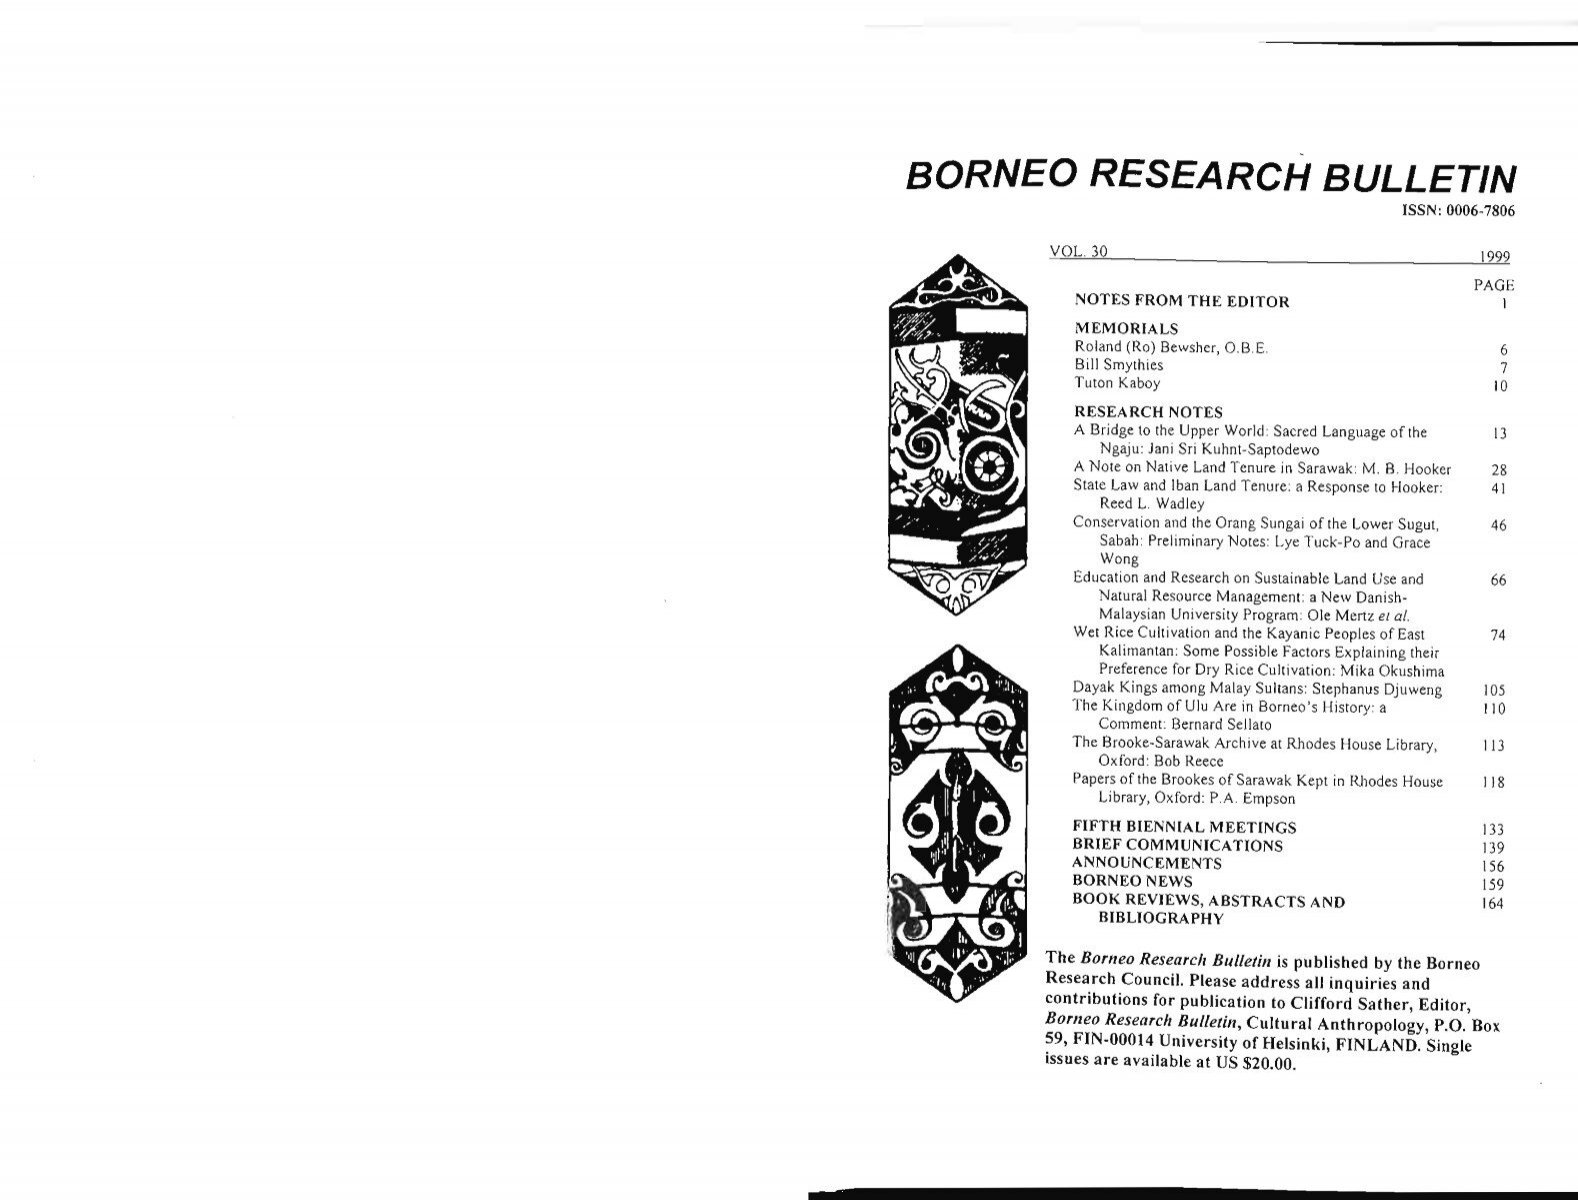 Volume 30, 1999 - Borneo Research Council